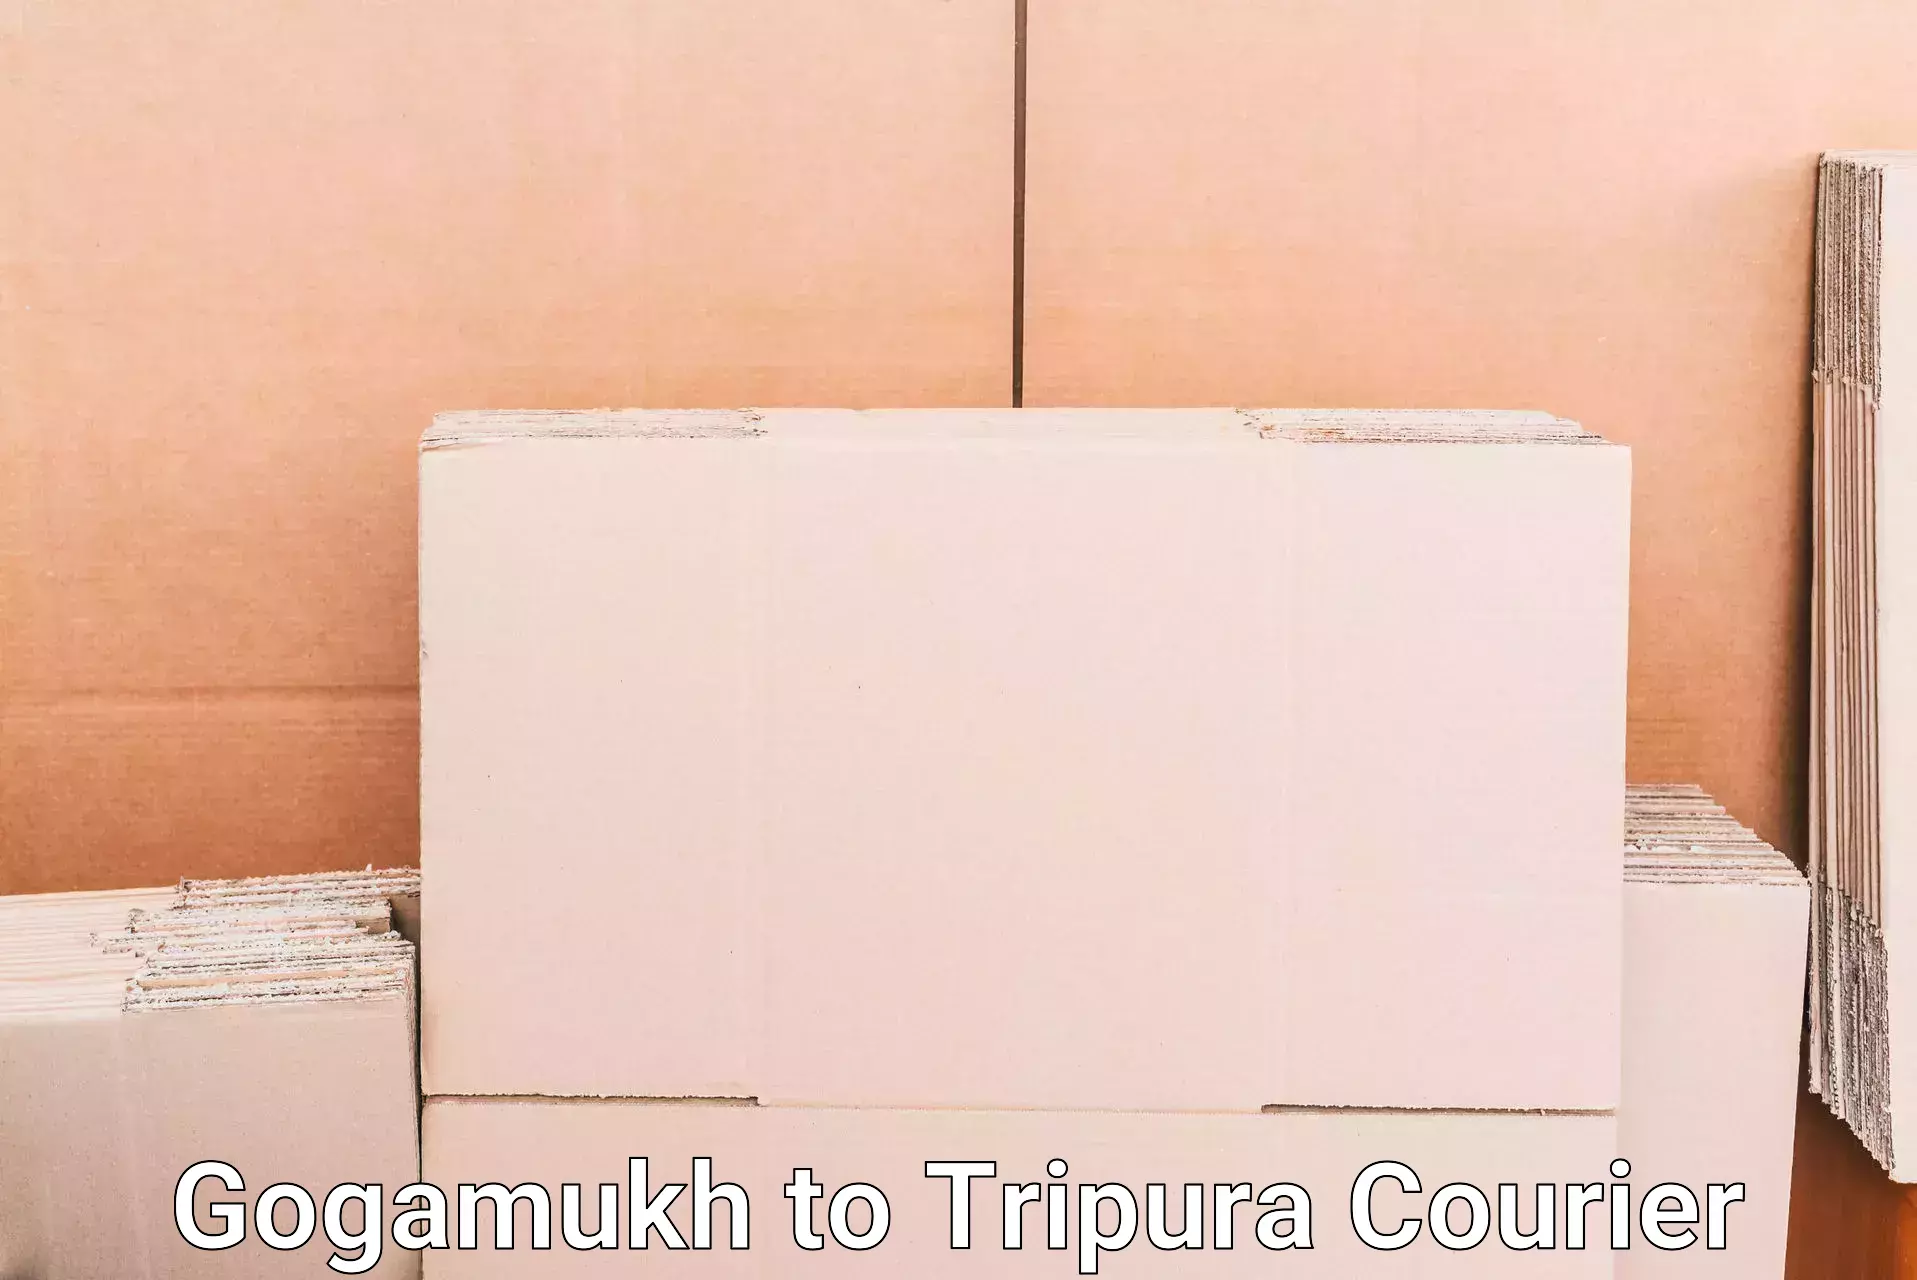 Baggage transport technology Gogamukh to Tripura